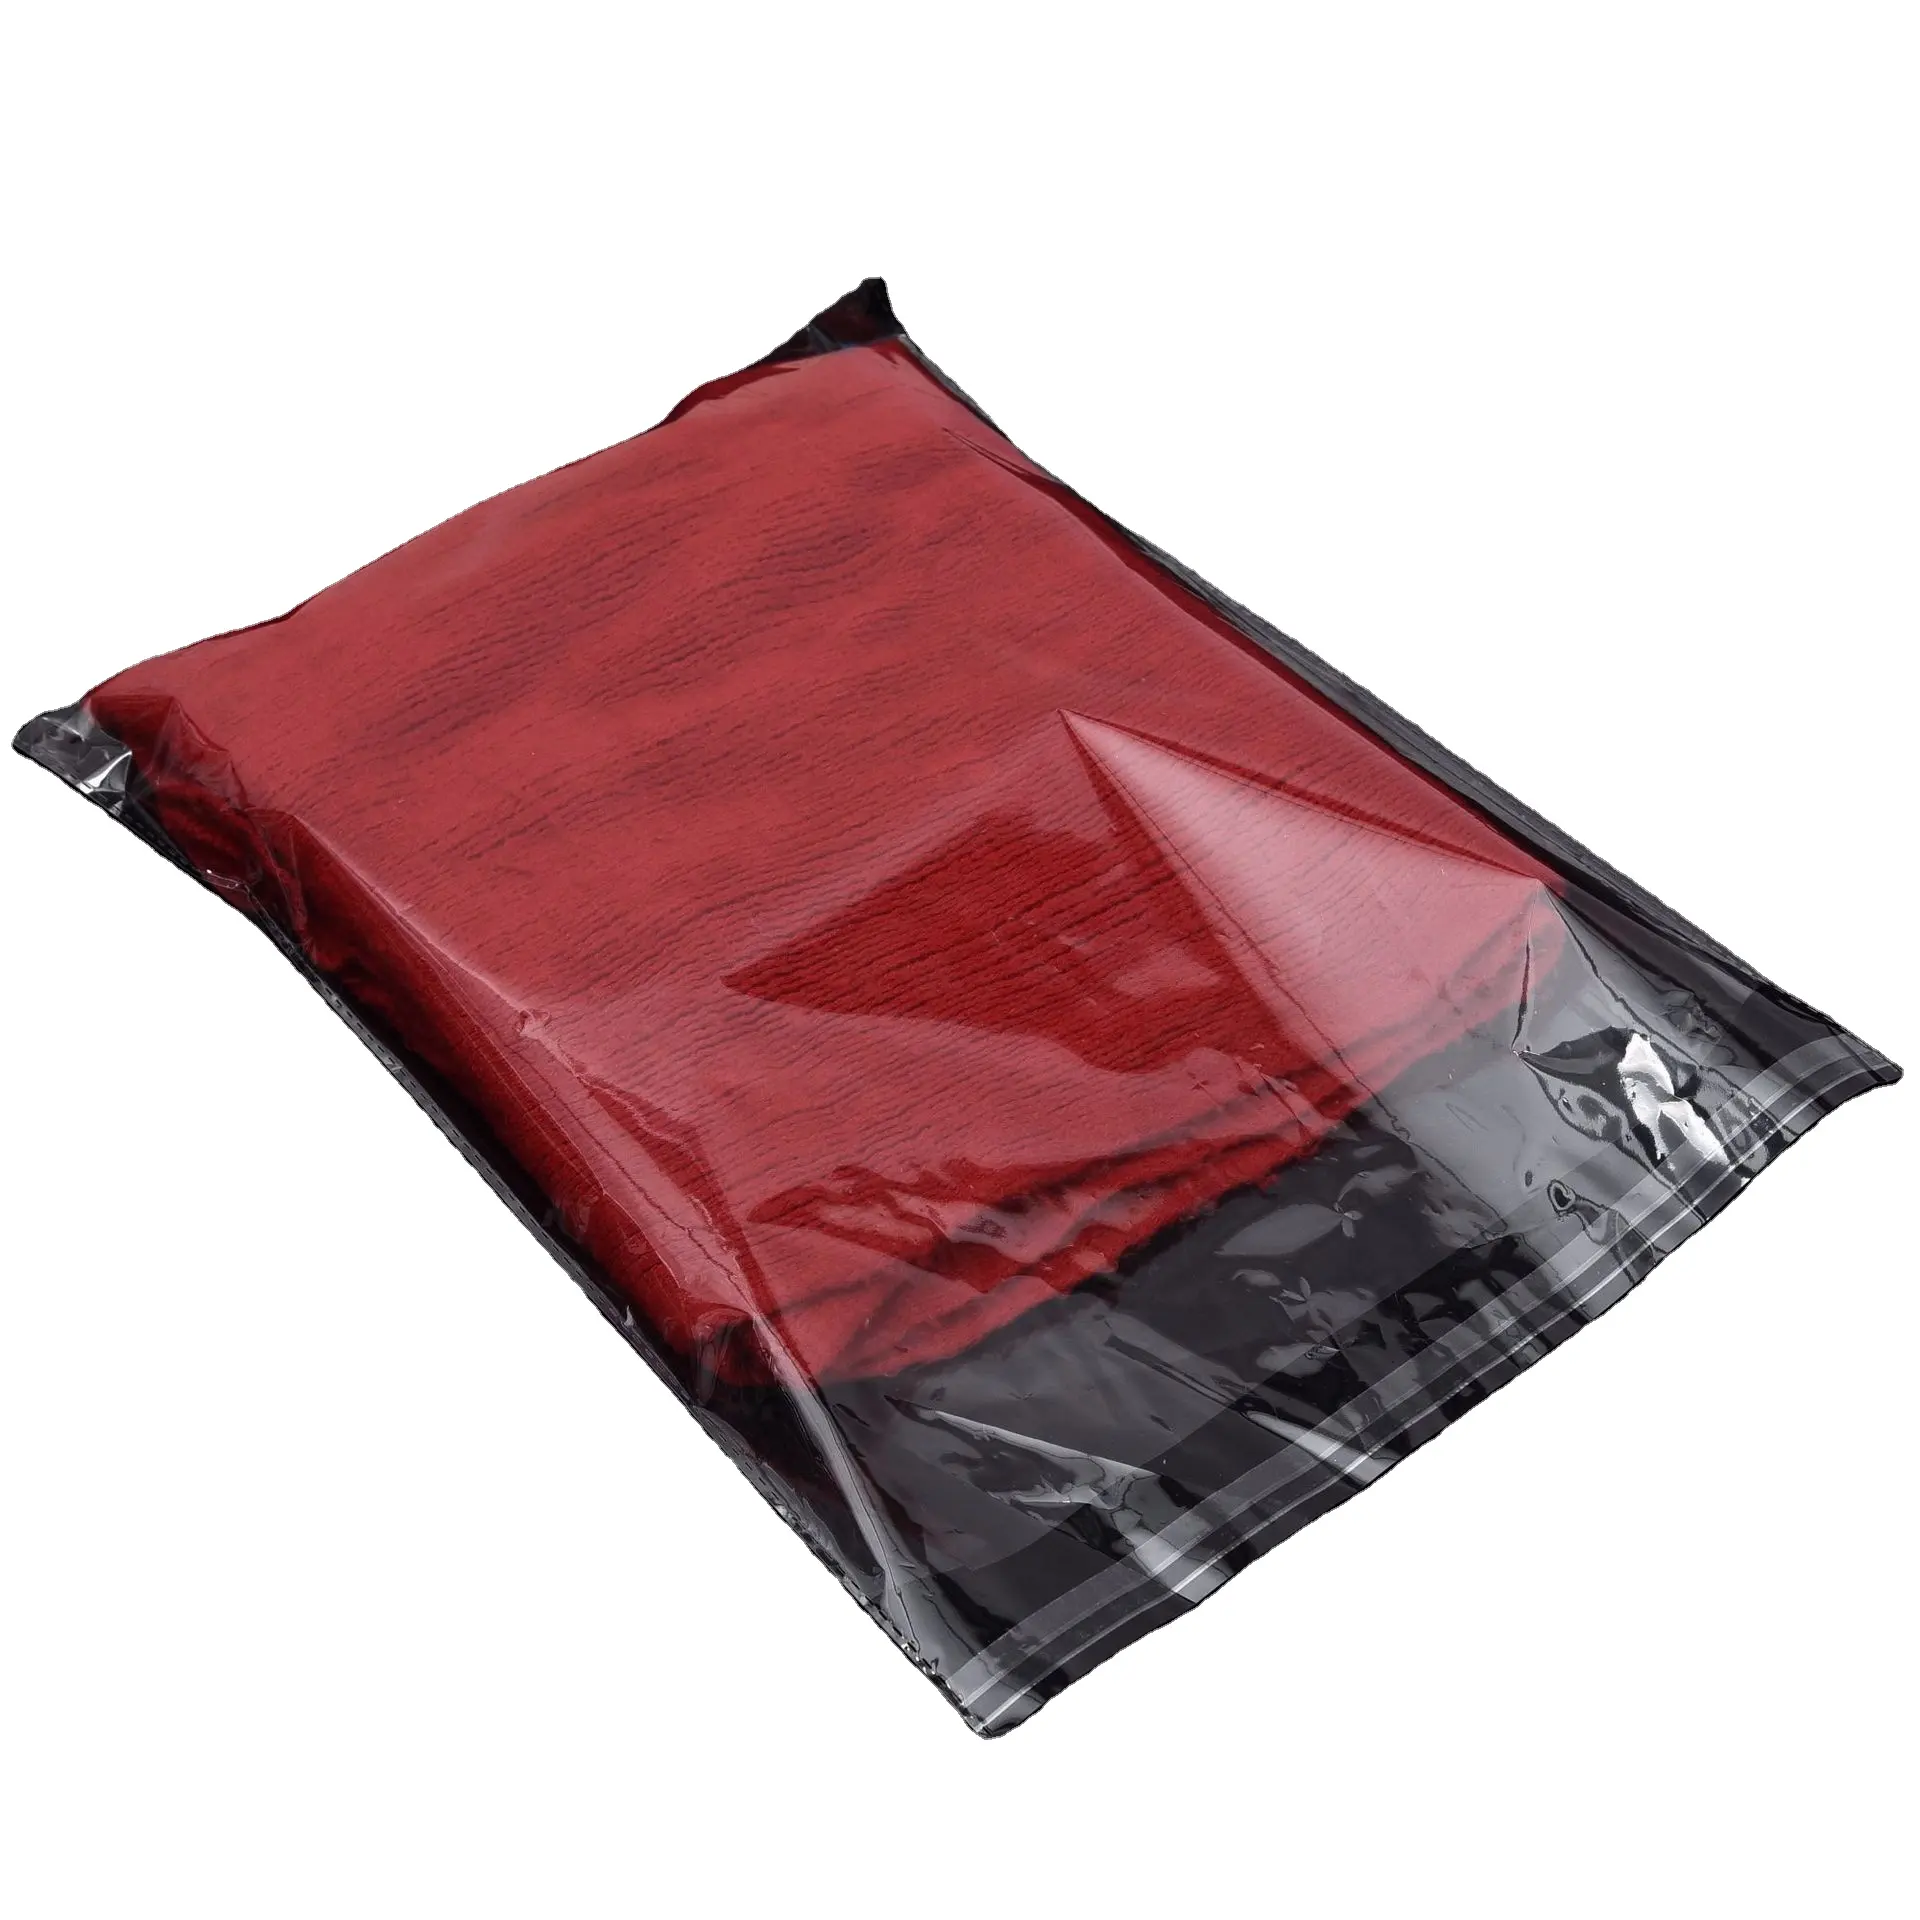 Bolsas de polietileno personalizadas transparentes que se pueden volver a sellar, bolsas de polietileno OPP de plástico transparente para ropa